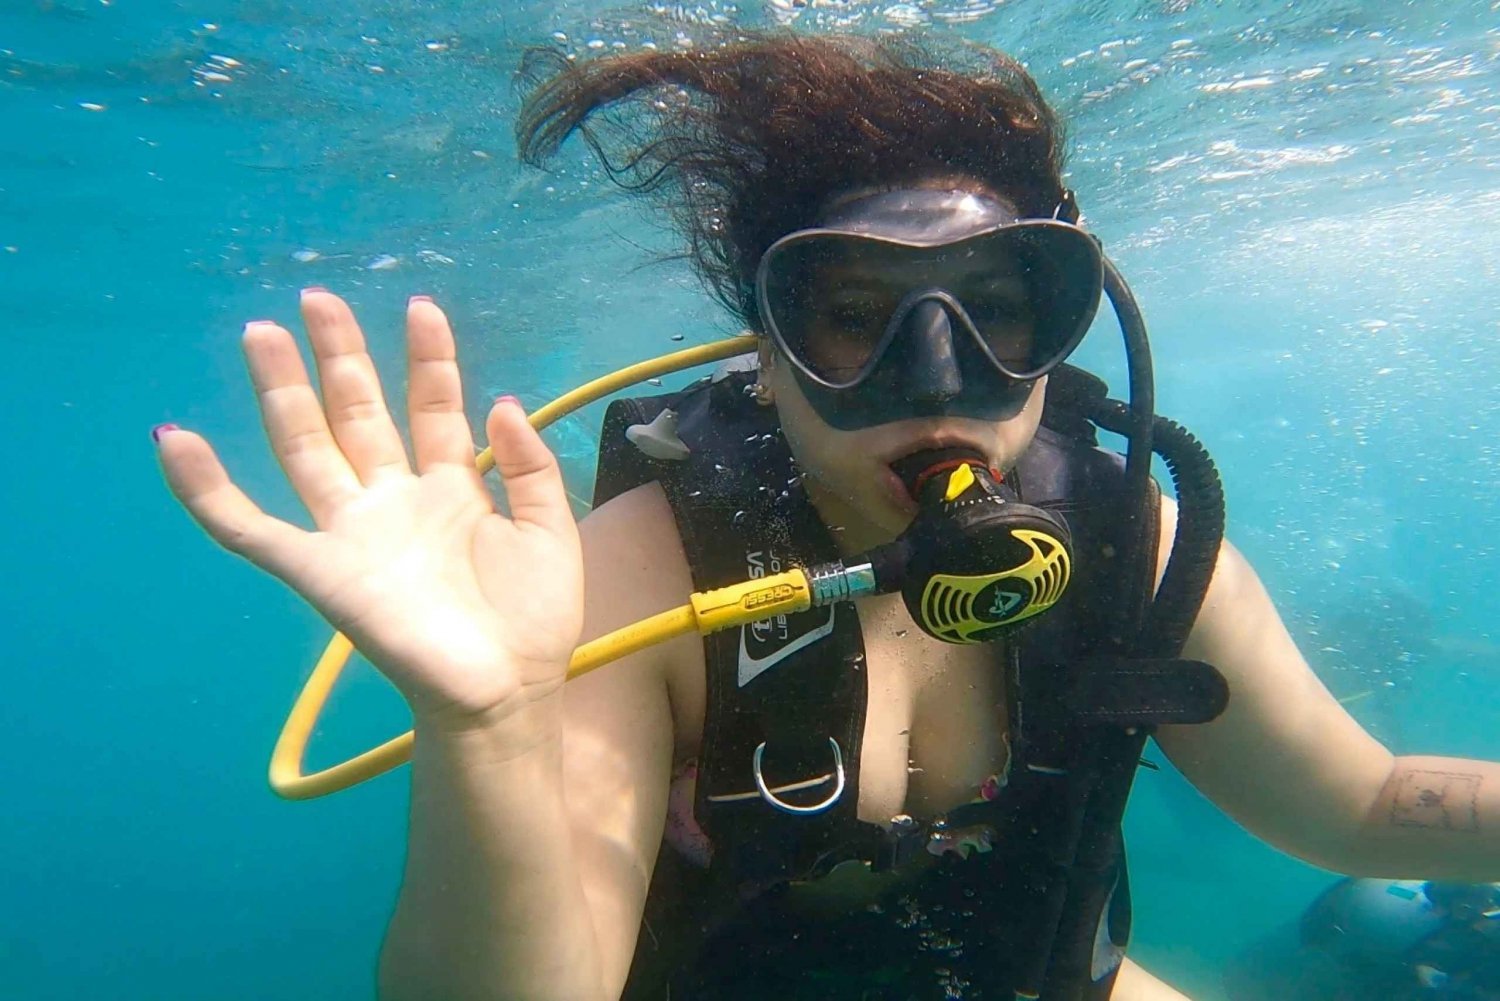 Honolulu : Tour d'initiation à la plongée sous-marine avec vidéos gratuites